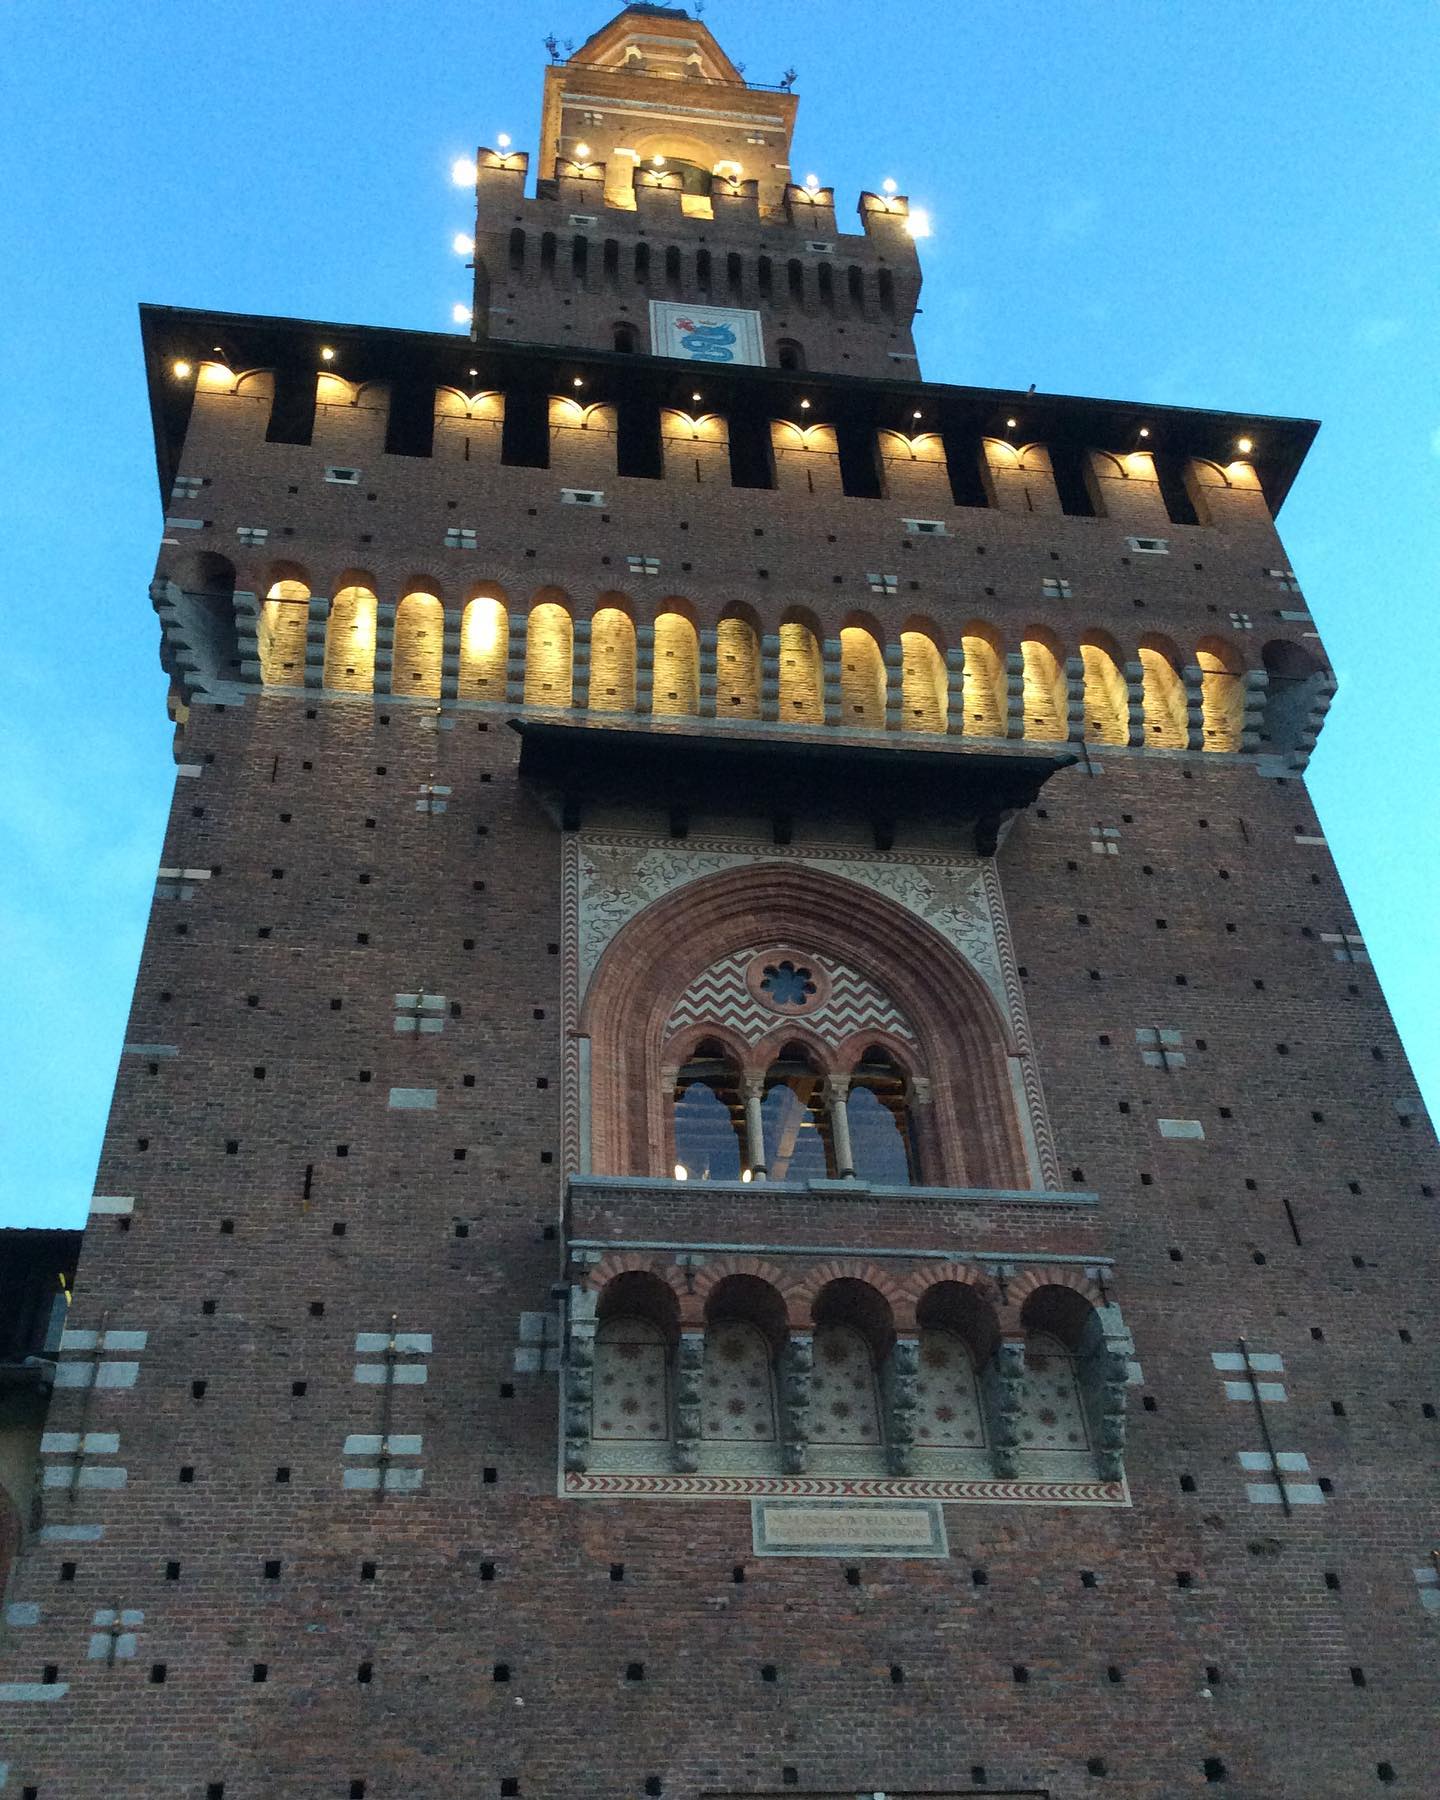 Sforza Castle in Milan
.
.
.
.
.
#sforzacastle #castellosforzesco #milano #milan #castellosforzescomilano #igmilano